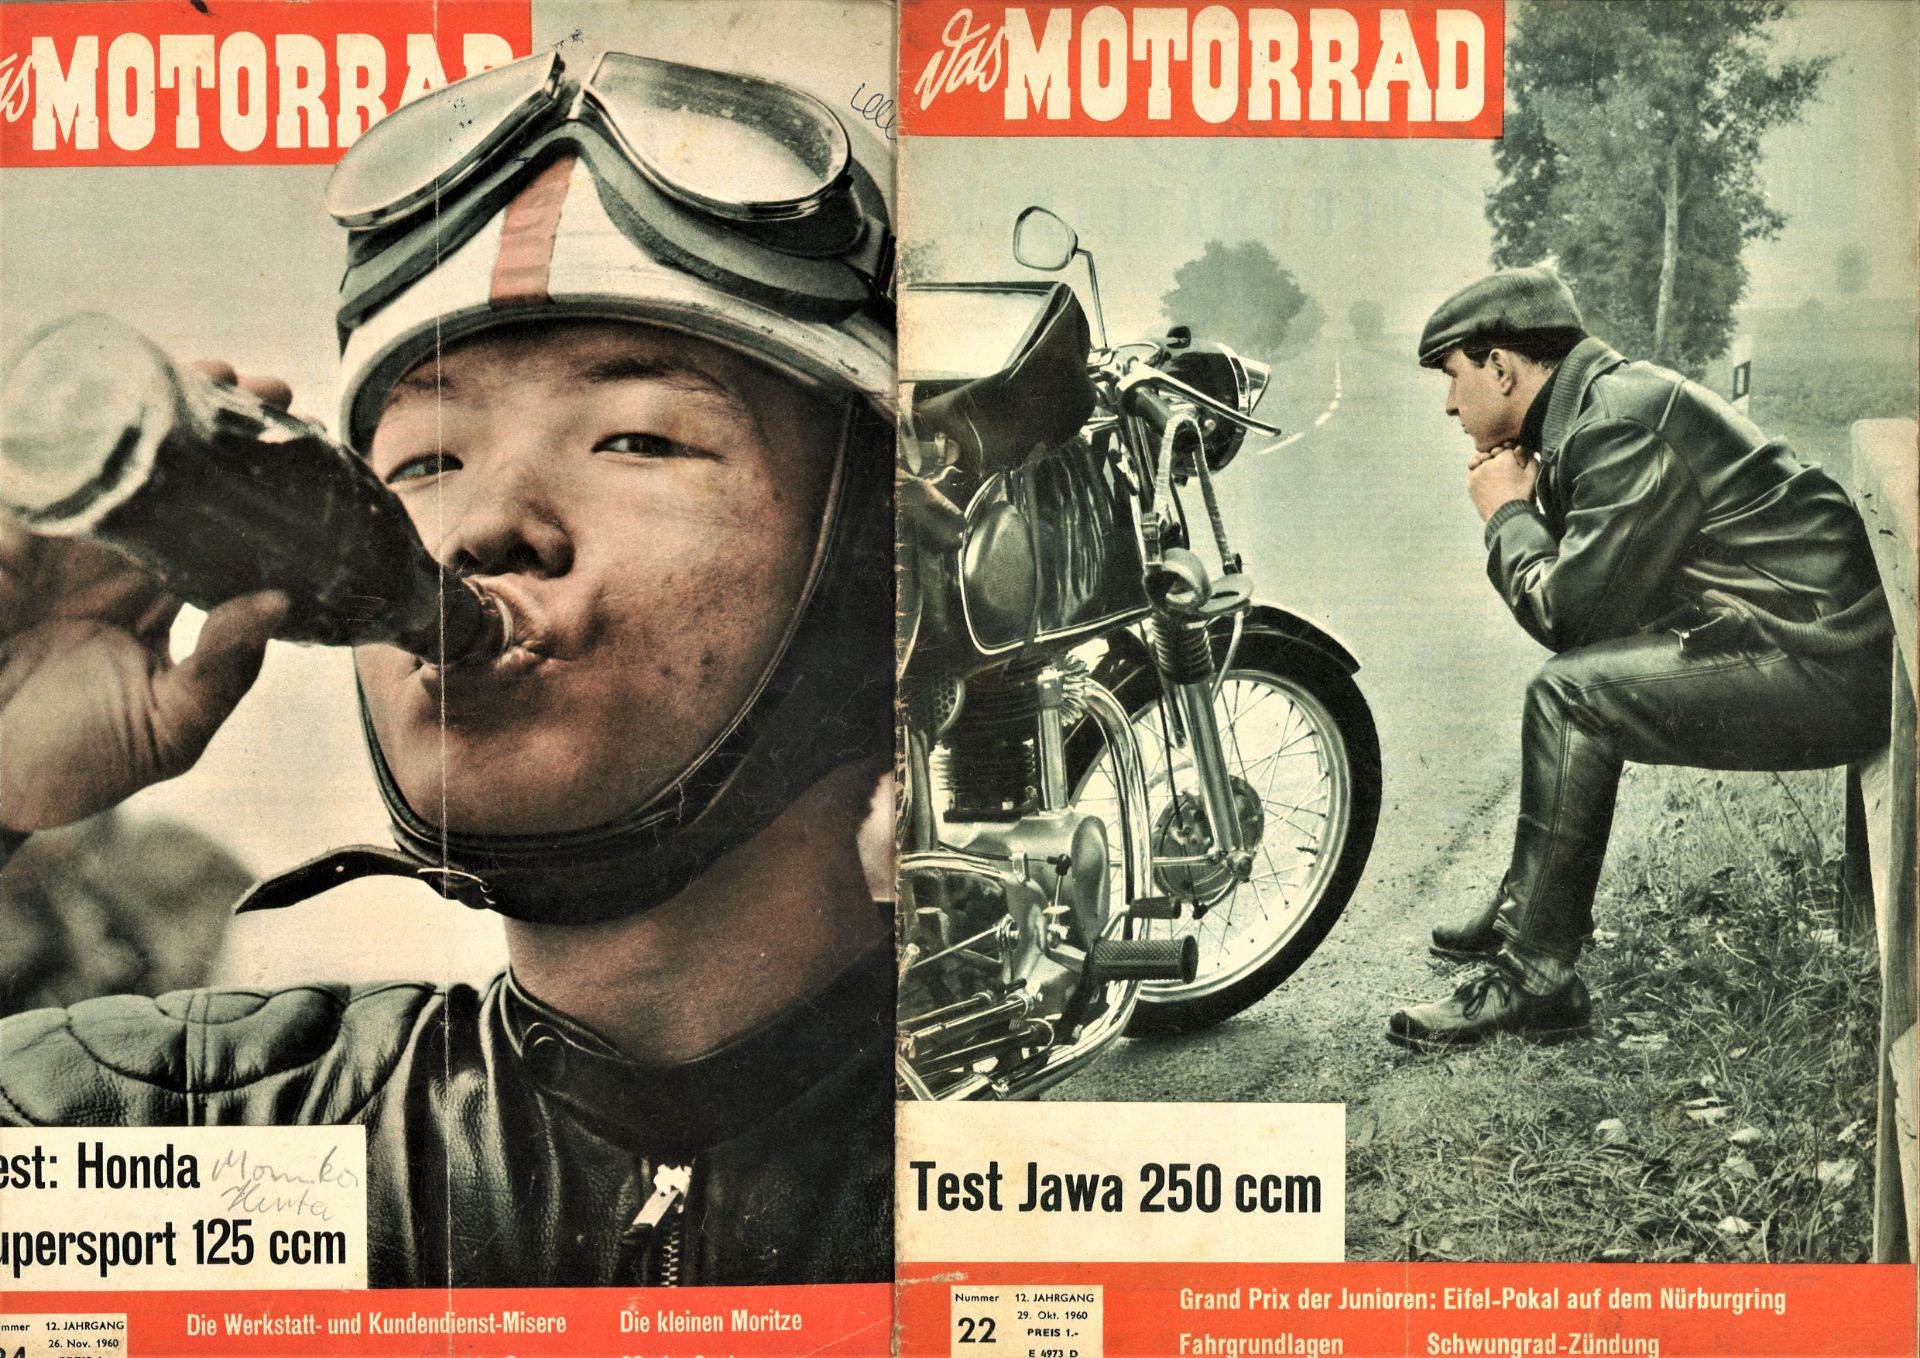 Das Motorrad, Magazin, hier 12. Jahrgang, 1960, Nr. 5, 12, 18, 21, 22, 24, 25 und 26 - Bild 3 aus 5